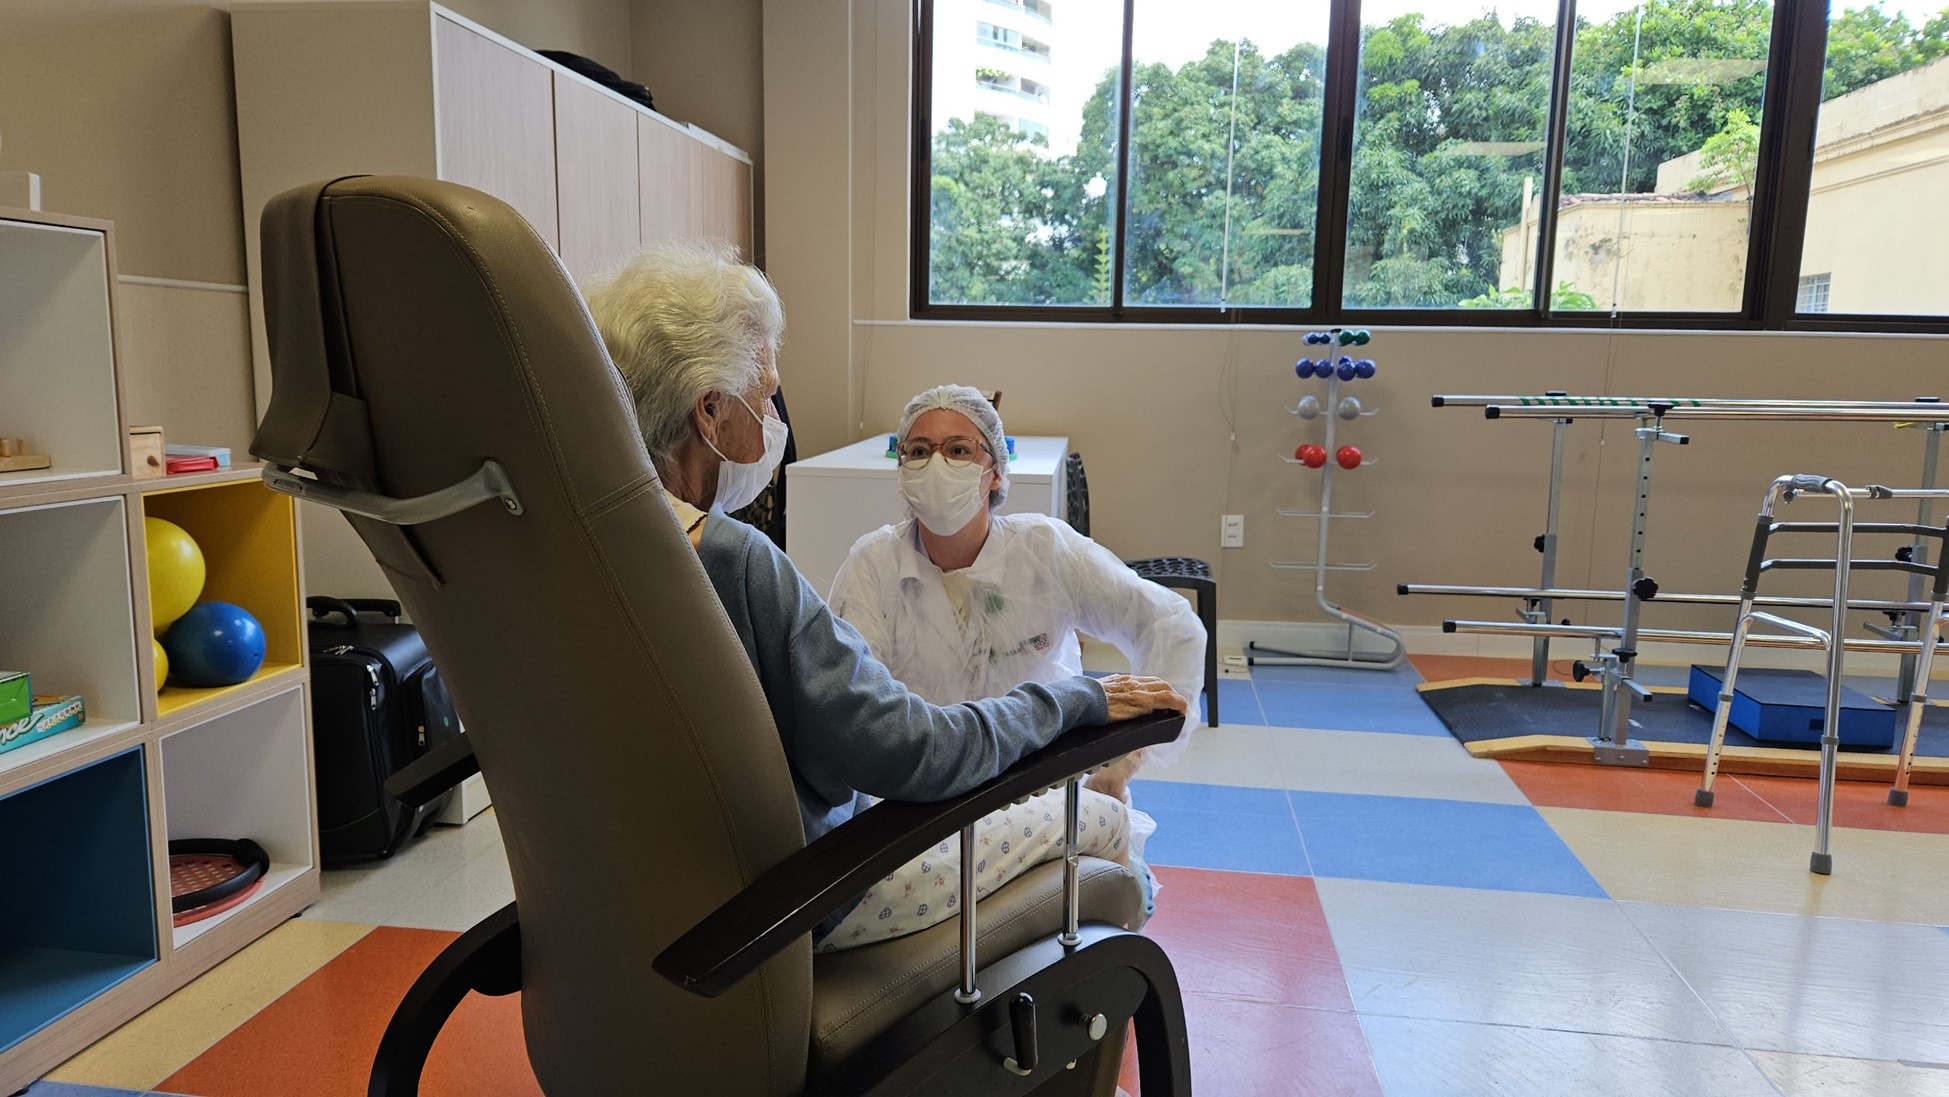 A Reabilitação na Clínica Florence pode colaborar com a qualidade de vida de pessoas com Doenças Neurodegenerativas